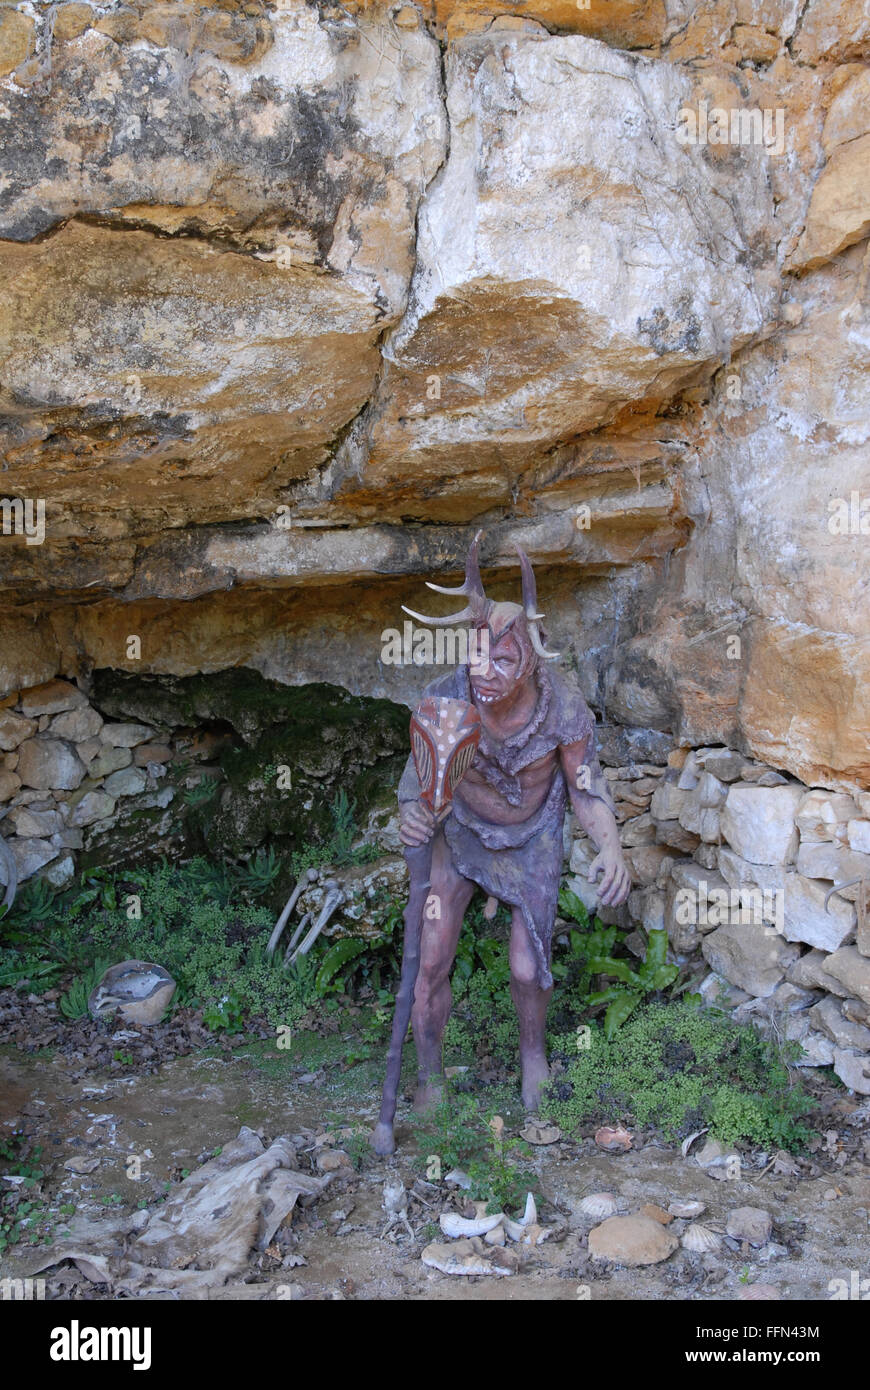 La reconstruction moderne du sorcier à St-Circ, site de la Grotte du sorcier en Dordogne. Banque D'Images